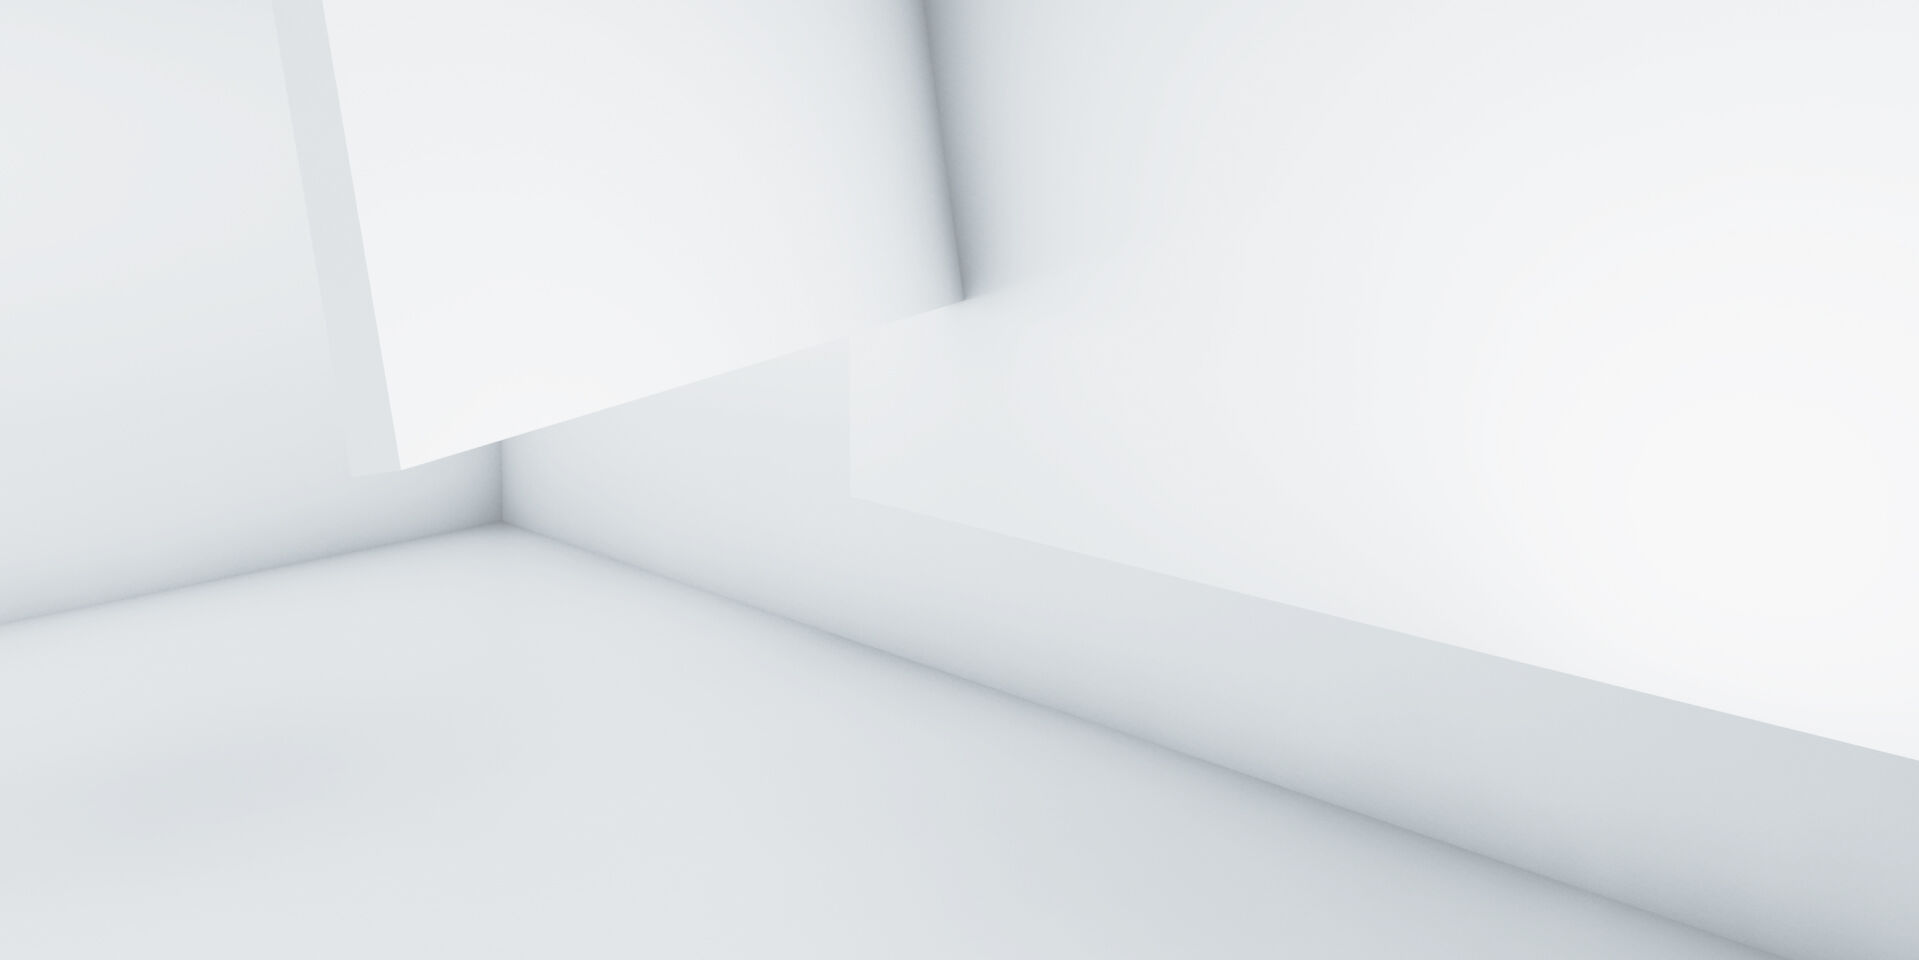 Eine abstrakte Abbildung von verschiedenen länglichen 3D-Objekten auf einem weißen Hintergrund